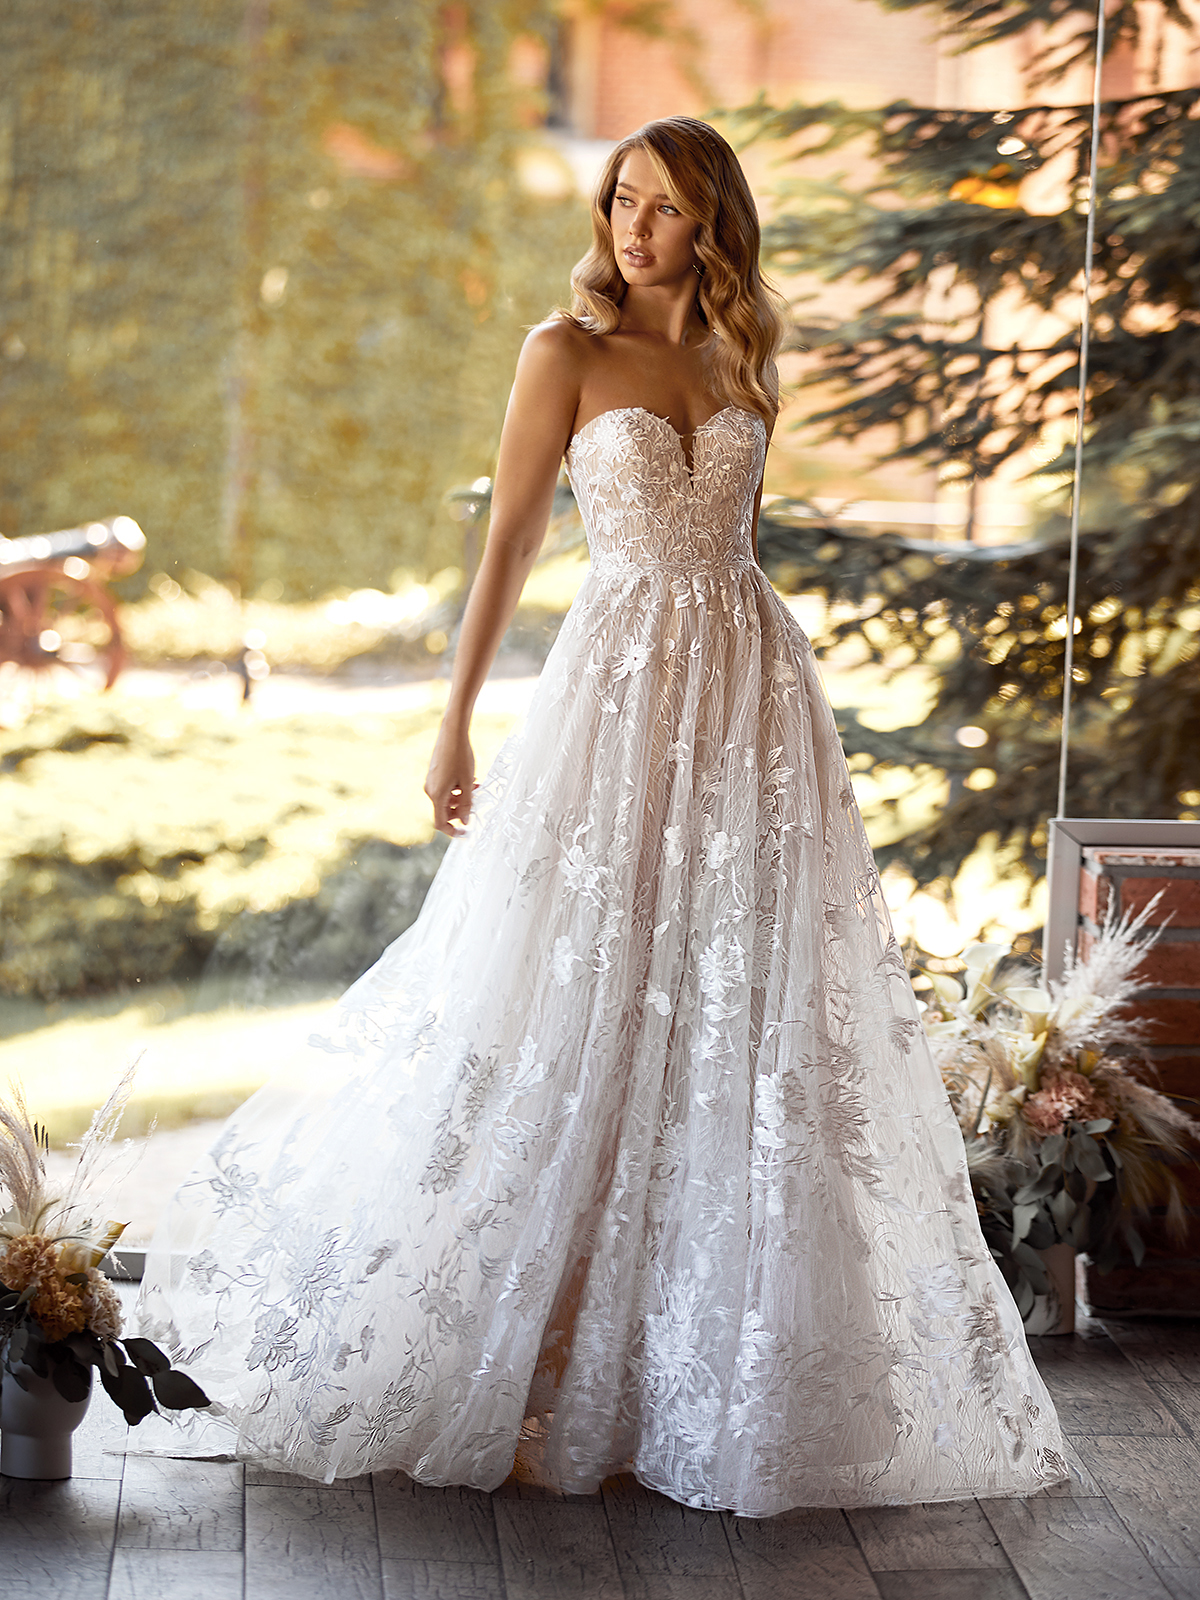 Spring Wedding Dress Trends | Val Stefani